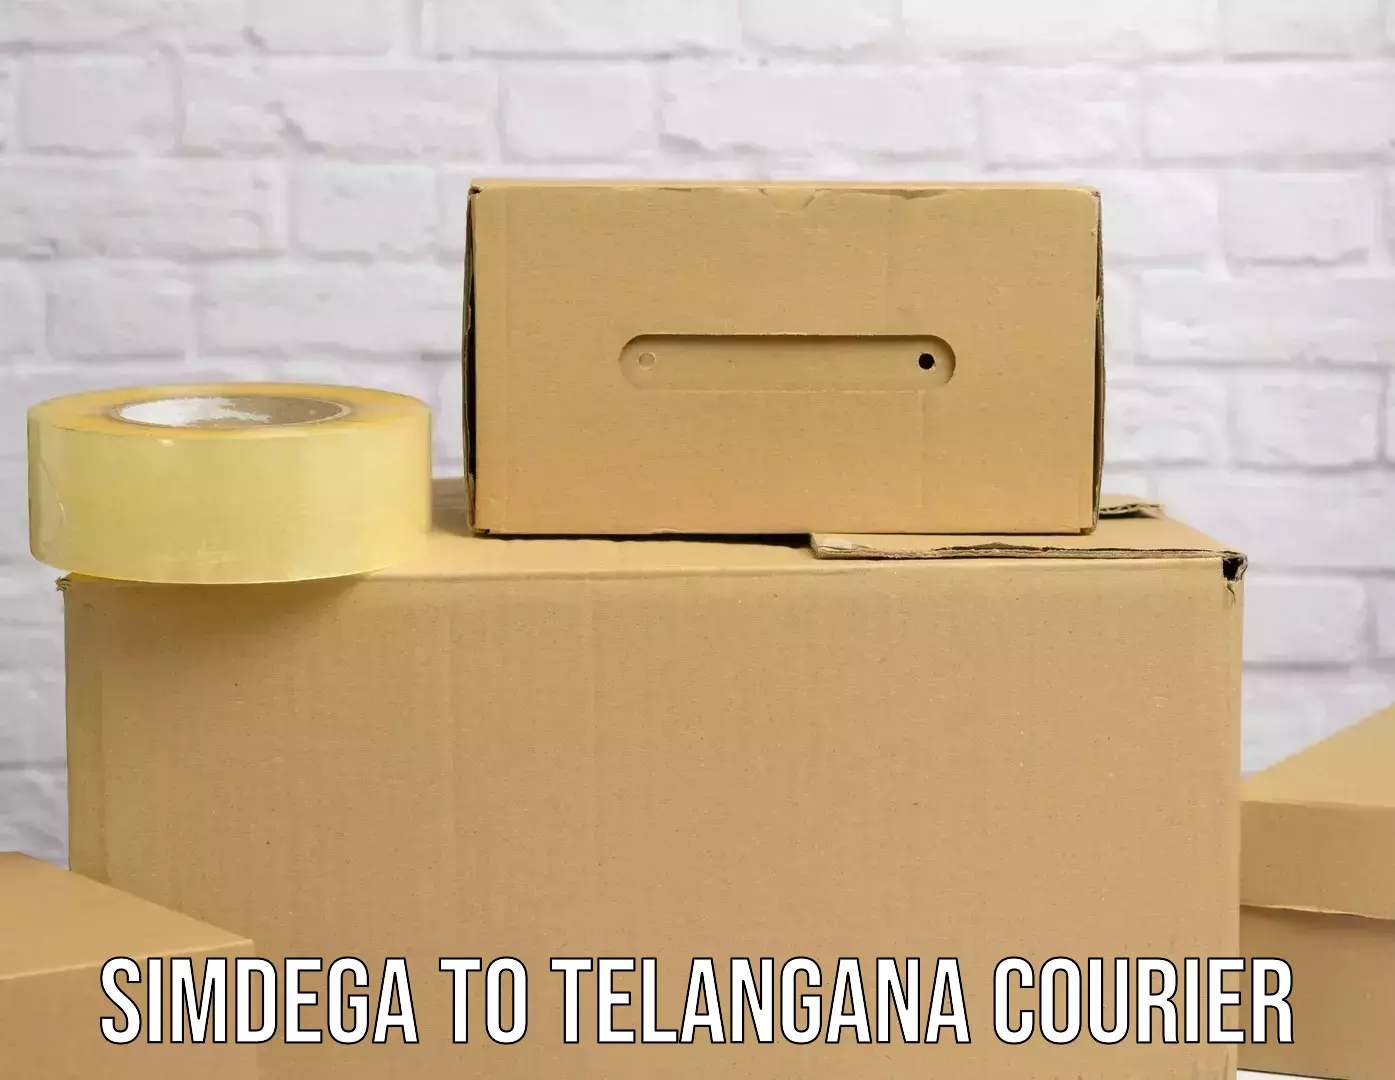 Bulk order courier in Simdega to Telangana